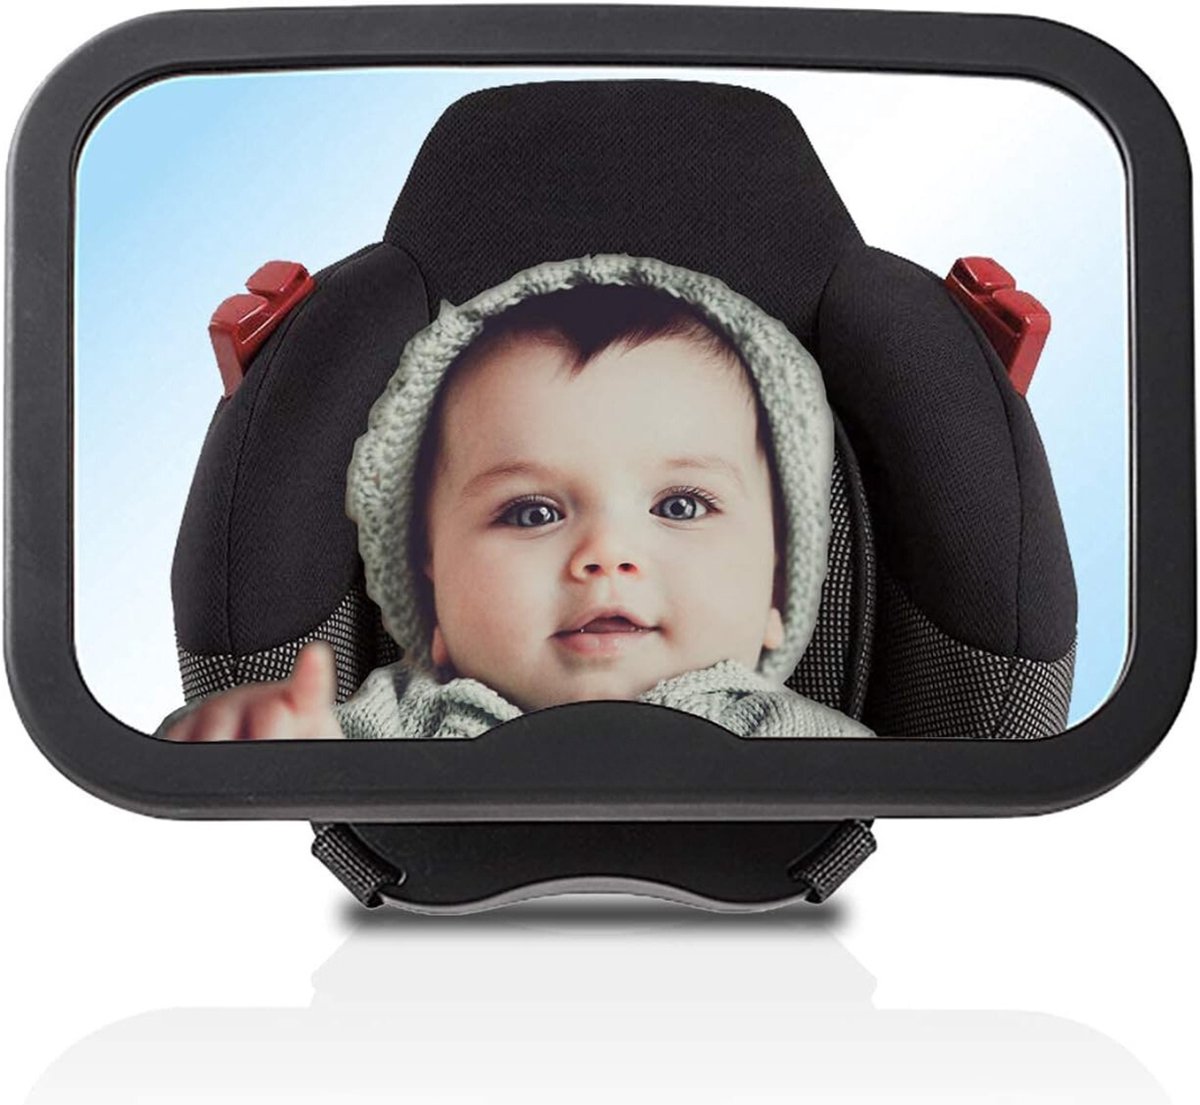 Autospiegel Baby - Achterbank Spiegel Baby - Achteruitkijkspiegel - Babyspiegel - Baby Veiligheid - Premium